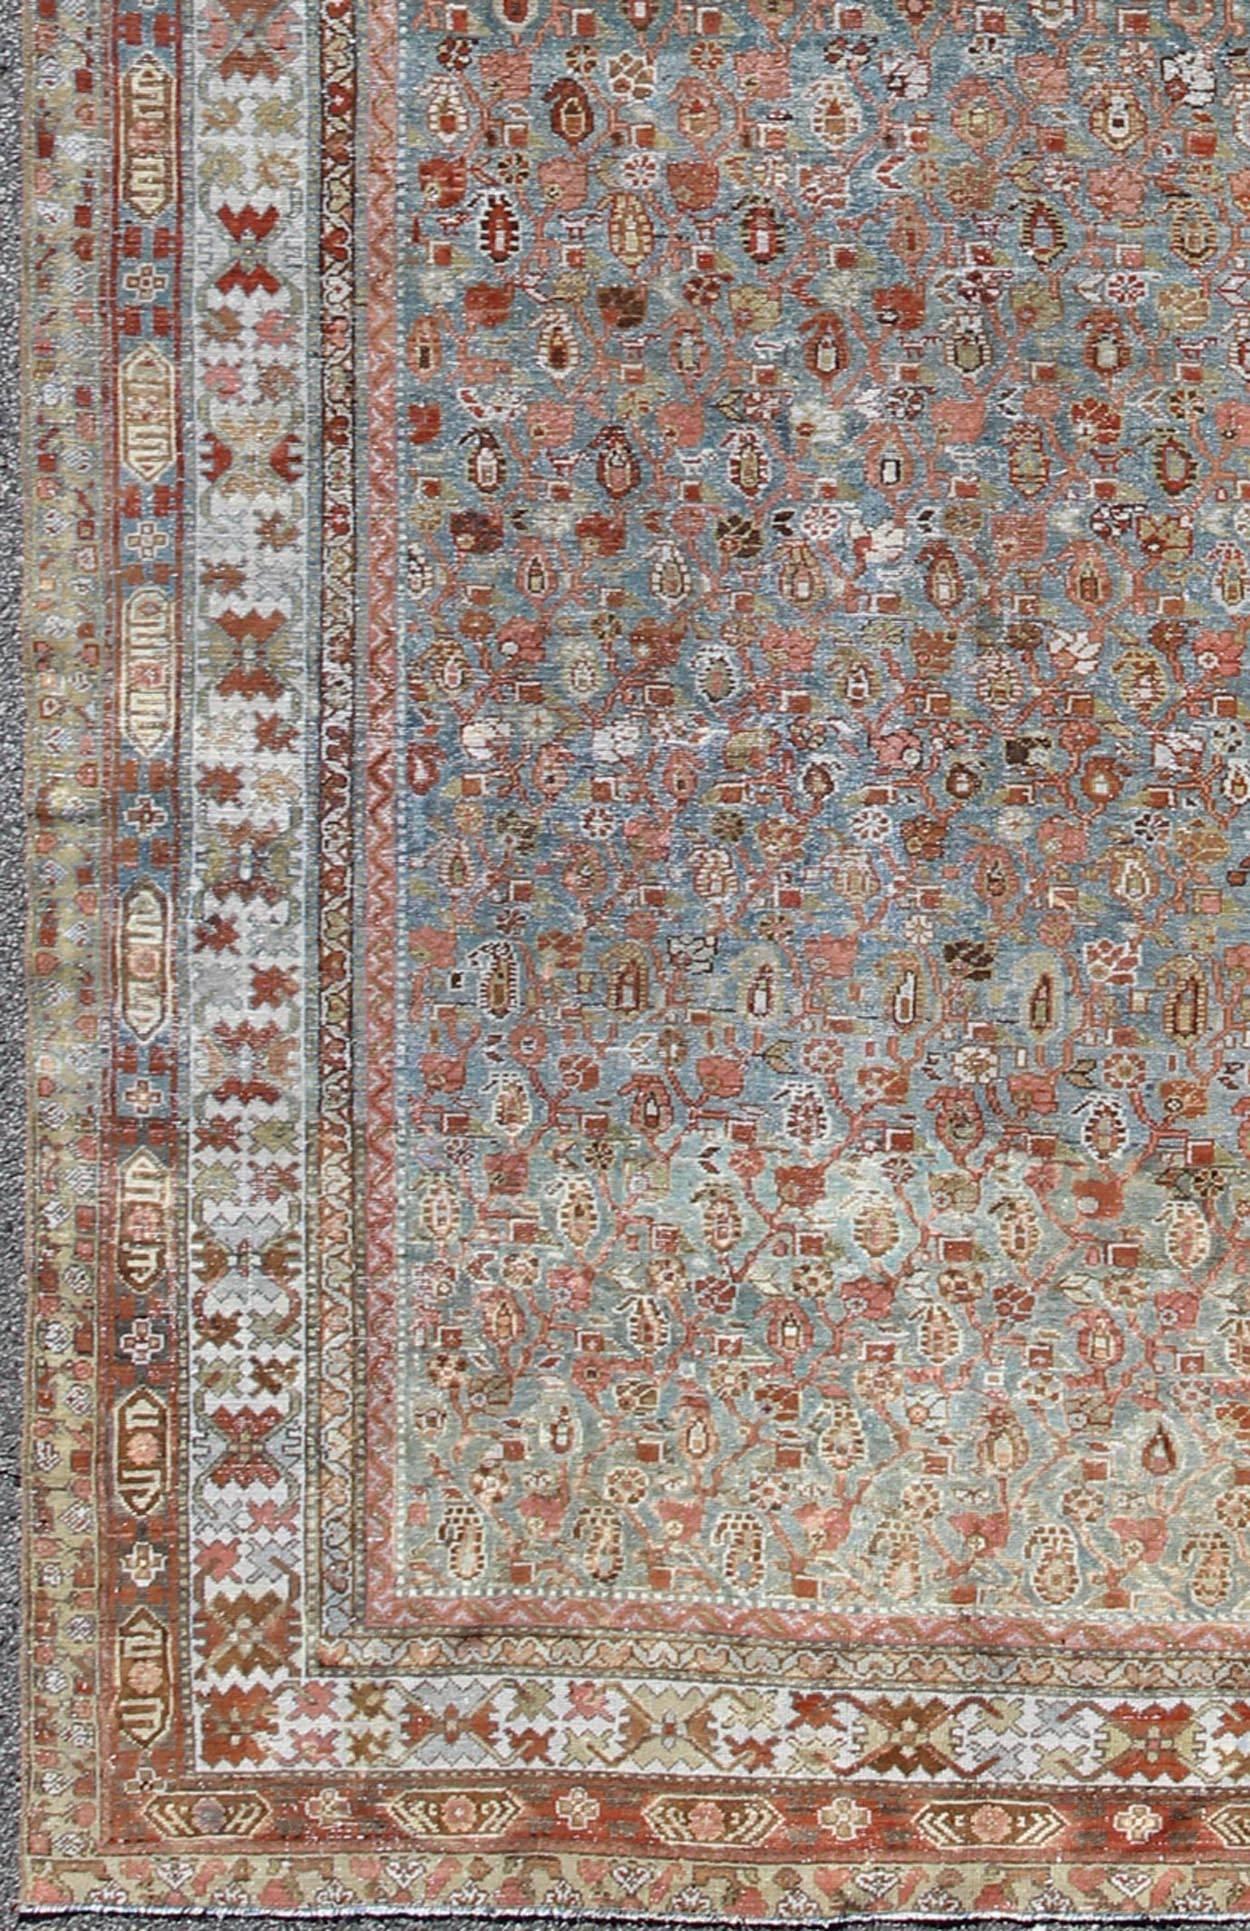 Roter und blauer antiker persischer Malayer-Teppich mit Allover-Muster und verschnörkelten Bordüren, Teppich sus-4704, Herkunftsland / Art: Iran / Malayer, um 1910

Dieser antike persische Malayer-Teppich wurde Anfang des 20. Jahrhunderts (um 1910)